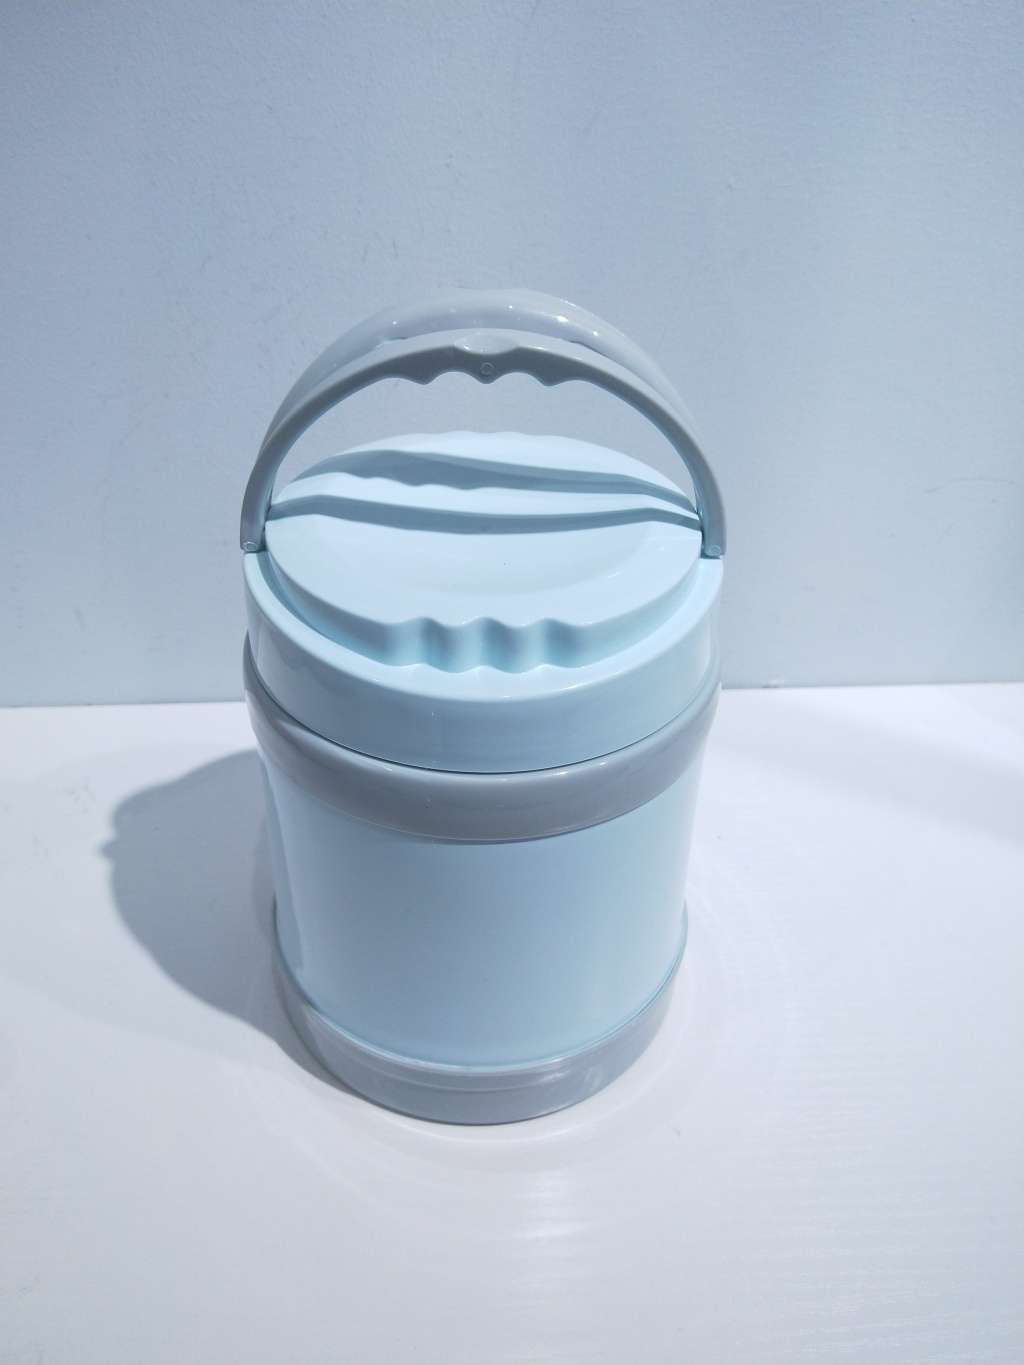 T07-8872不锈钢保温饭盒 便携式提手保温桶 便当盒塑料餐具详情图5